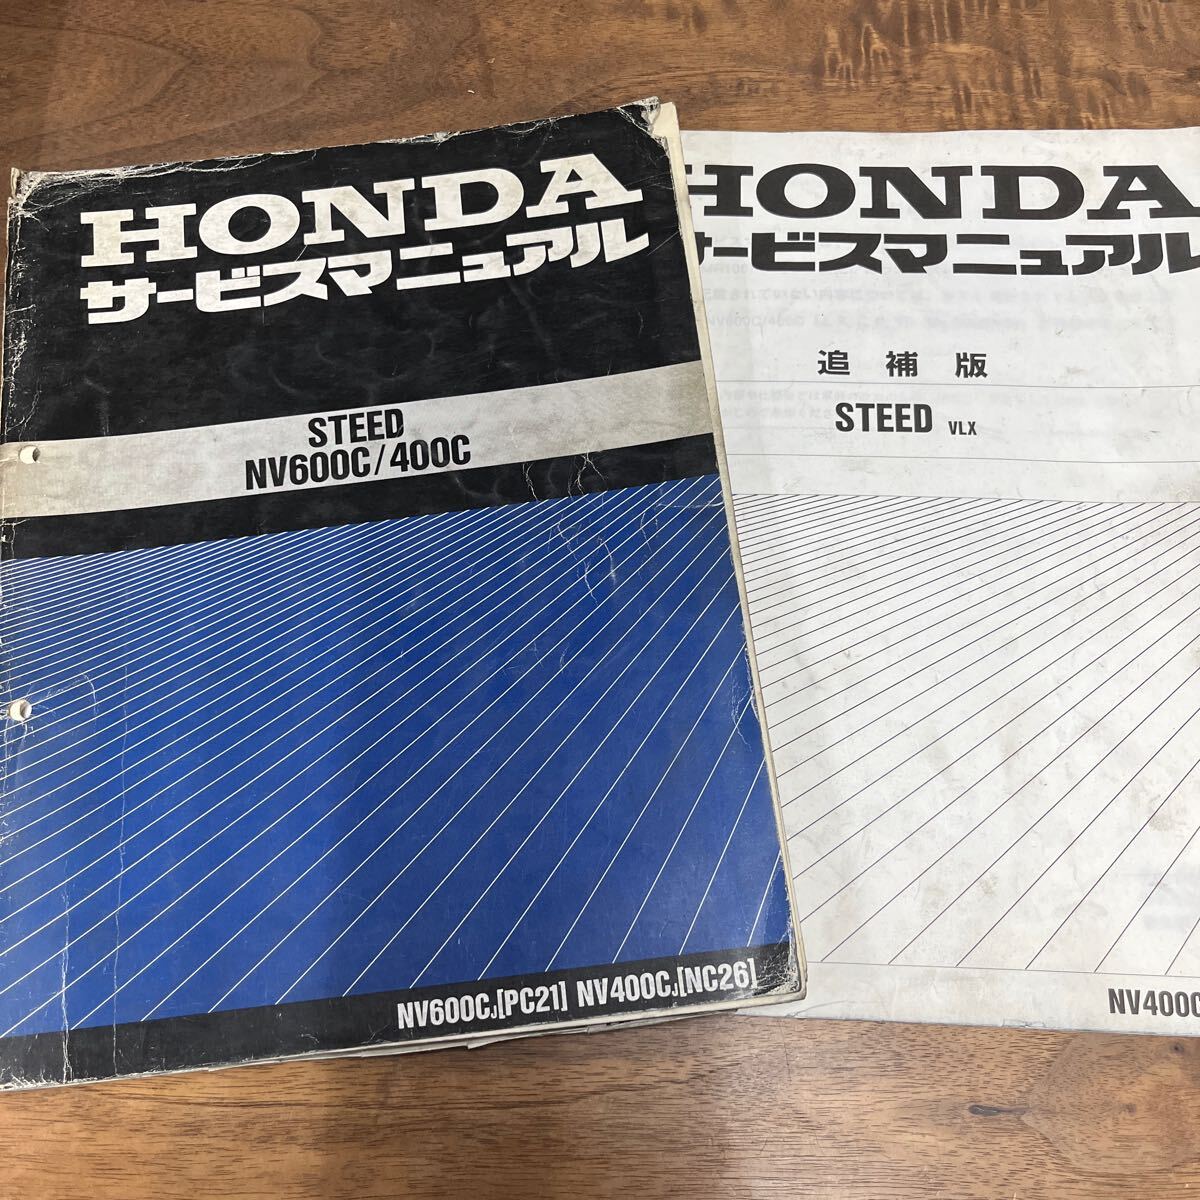 MB-3105* клик post ( единый по всей стране стоимость доставки 185 иен ) HONDA Honda руководство по обслуживанию STEED NV600C/400C 60MR100 + приложение Showa 63 год 1 месяц N-4/③